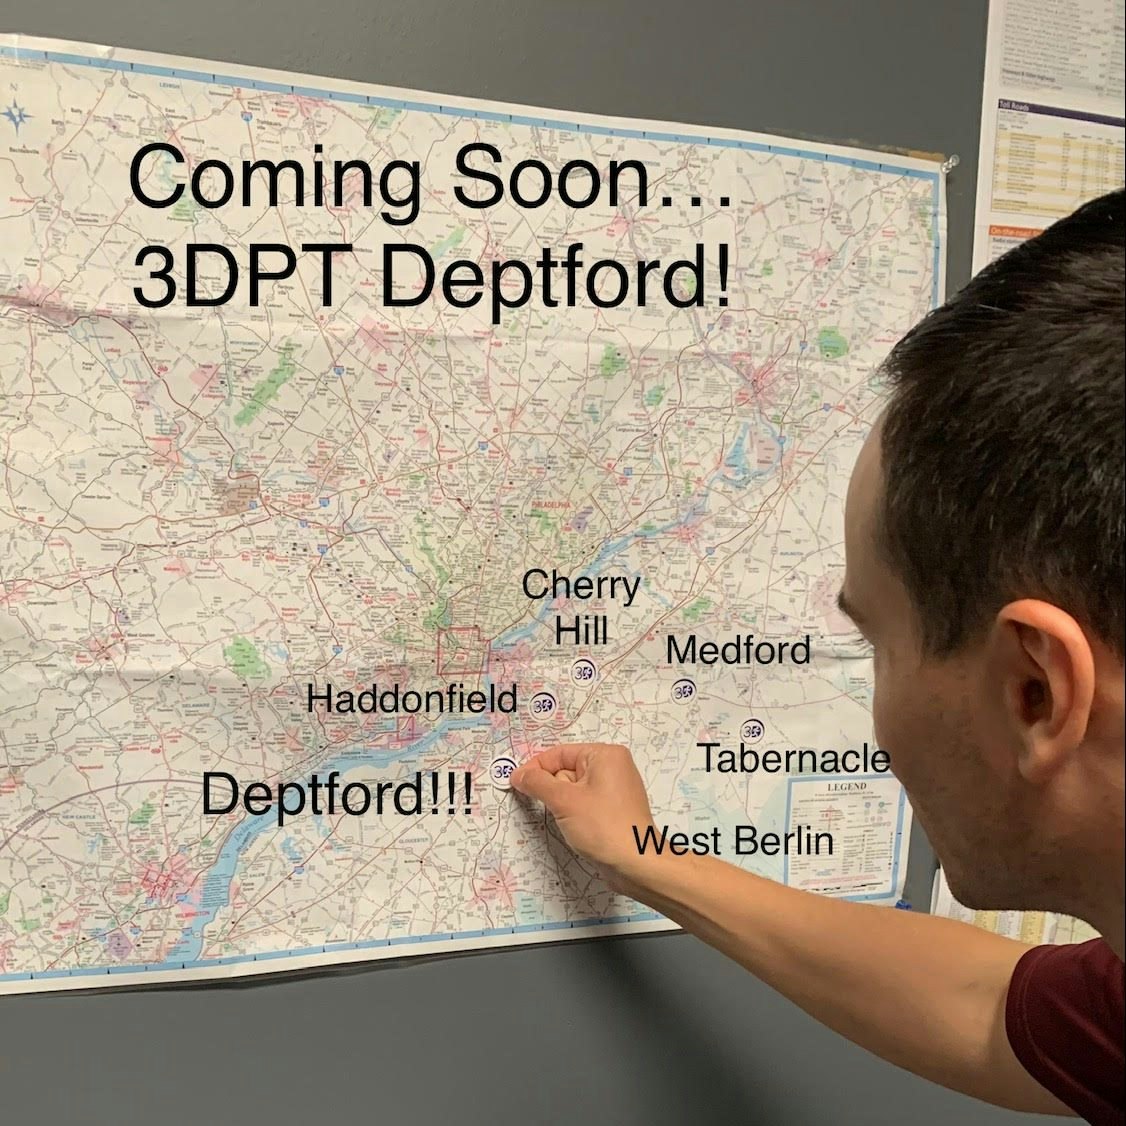 3DPT Deptford